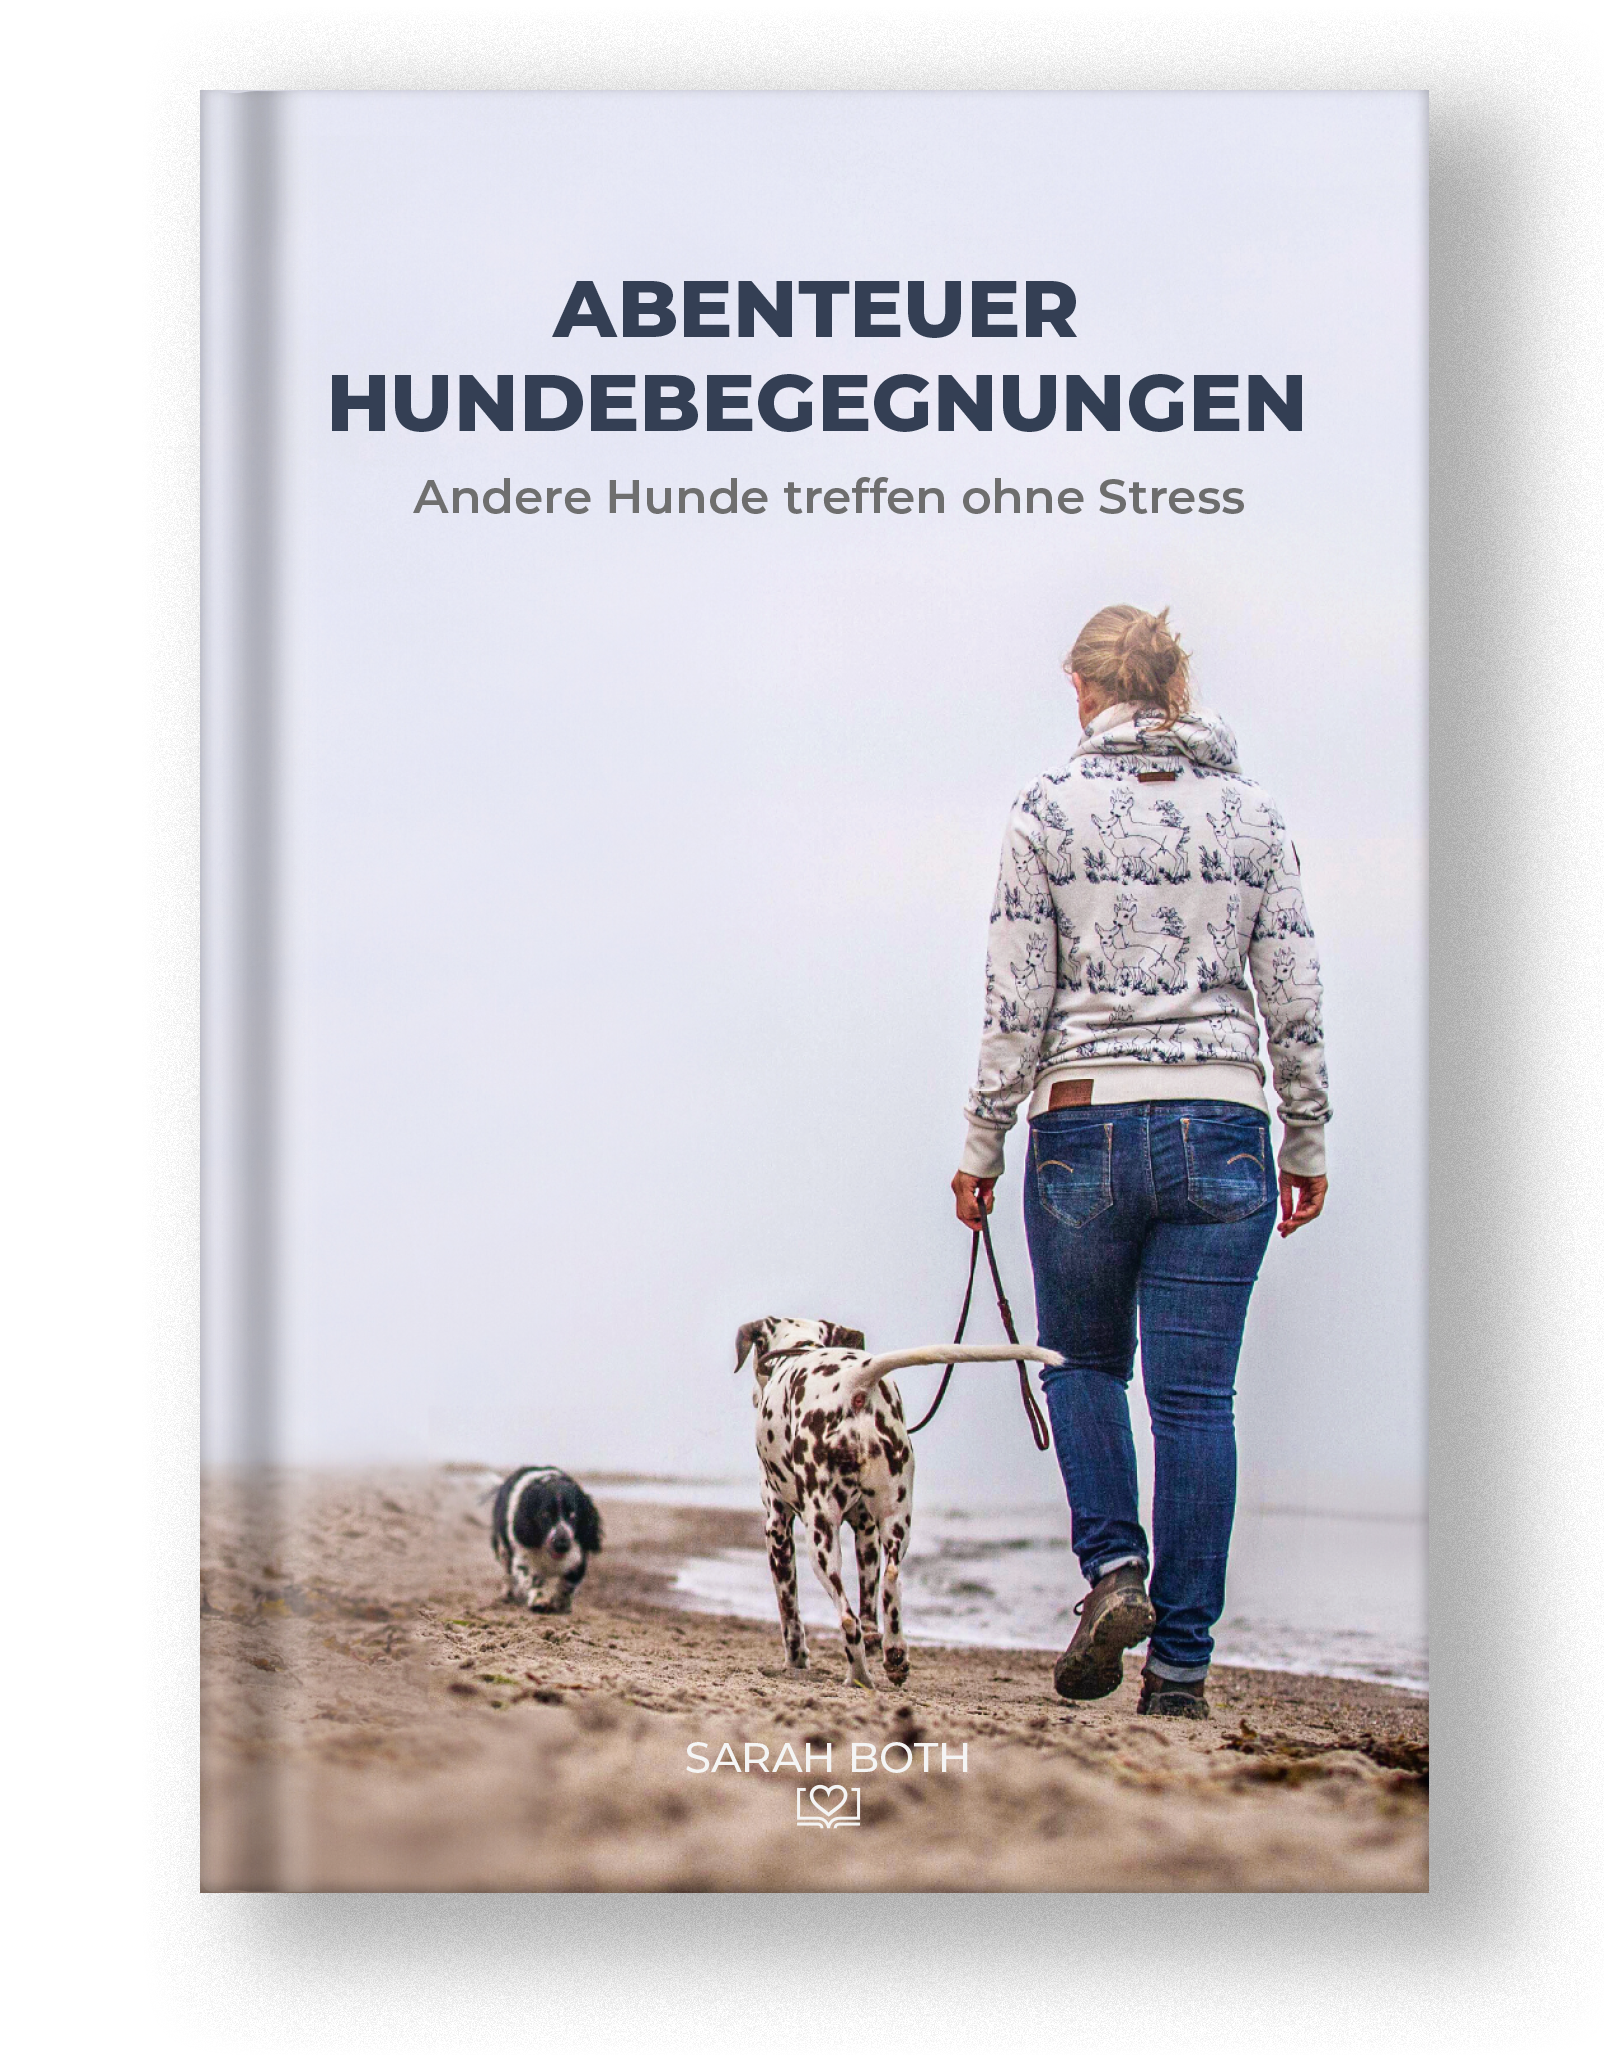 Nicole Röder über "Abenteuer Hundebegegnungen"